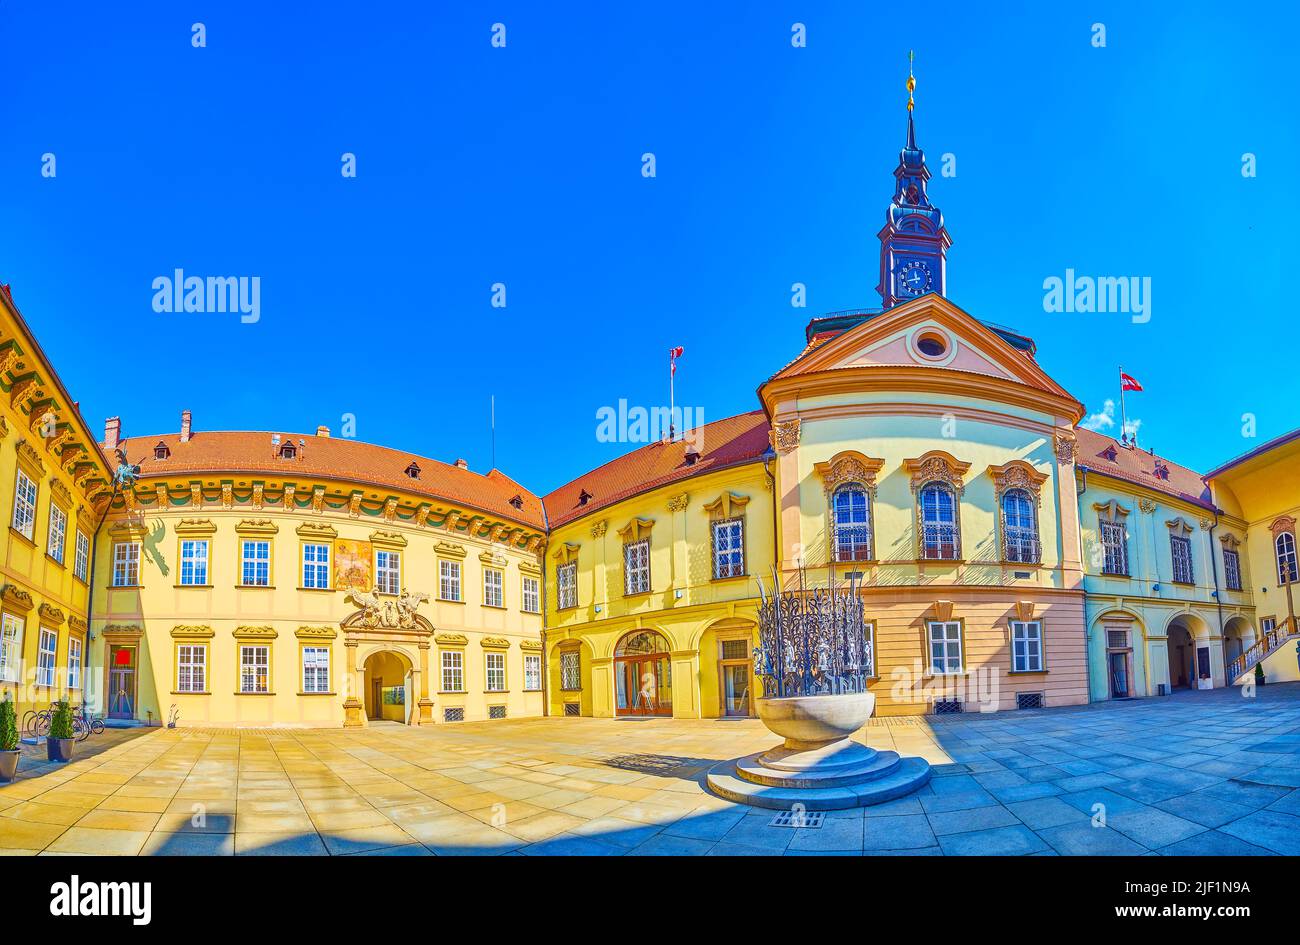 Panorama de la grande cour de Nova Radnice (nouvel hôtel de ville) de Brno, République tchèque Banque D'Images